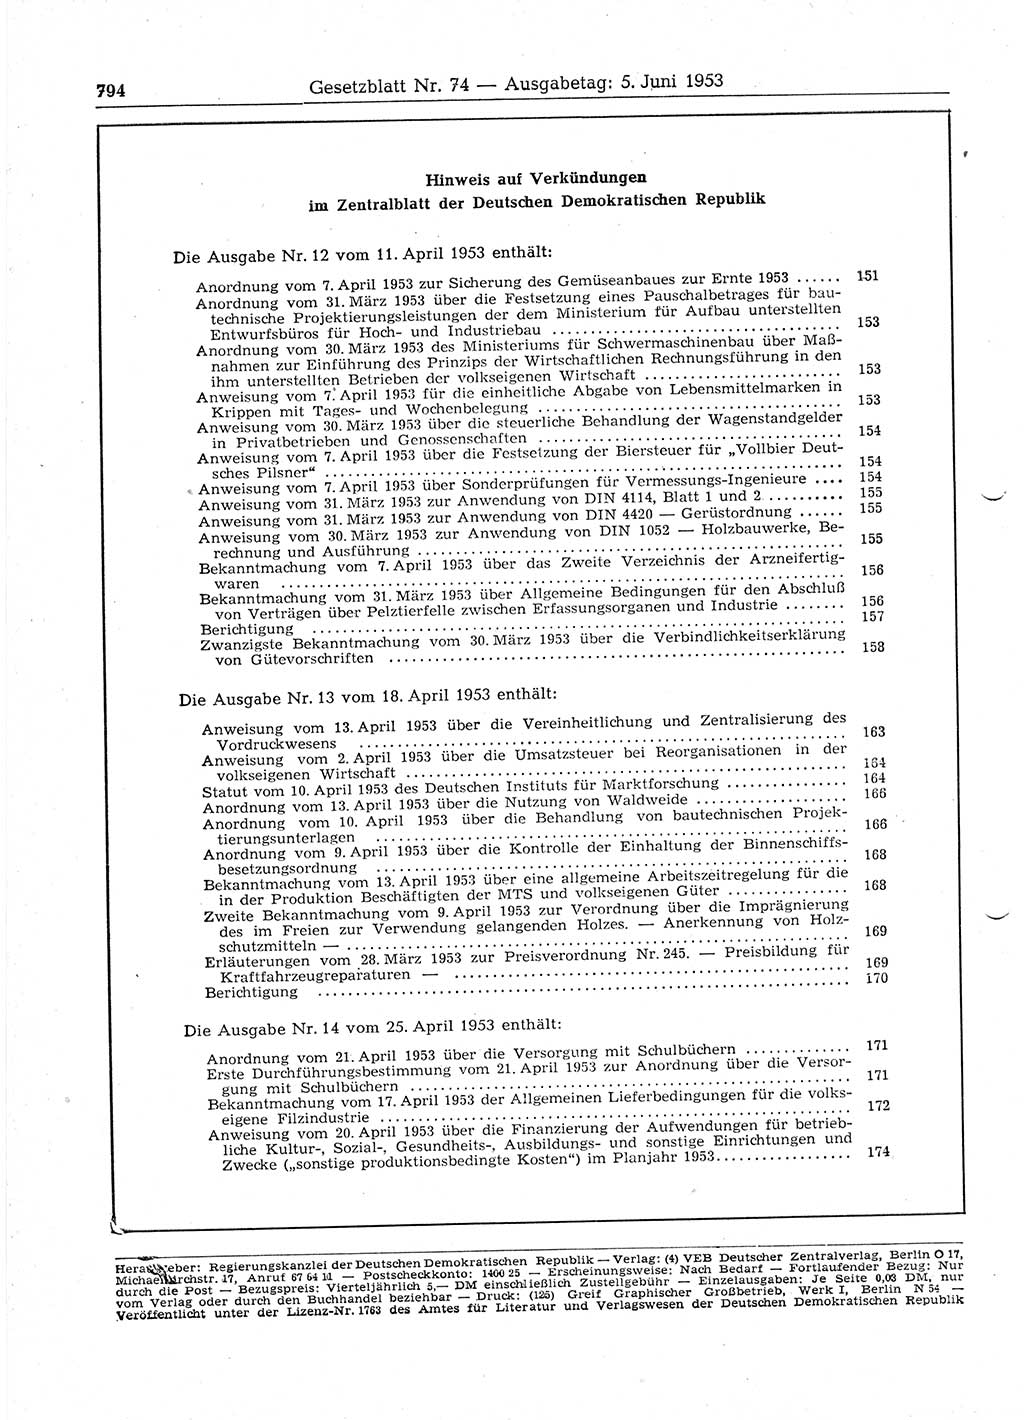 Gesetzblatt (GBl.) der Deutschen Demokratischen Republik (DDR) 1953, Seite 794 (GBl. DDR 1953, S. 794)